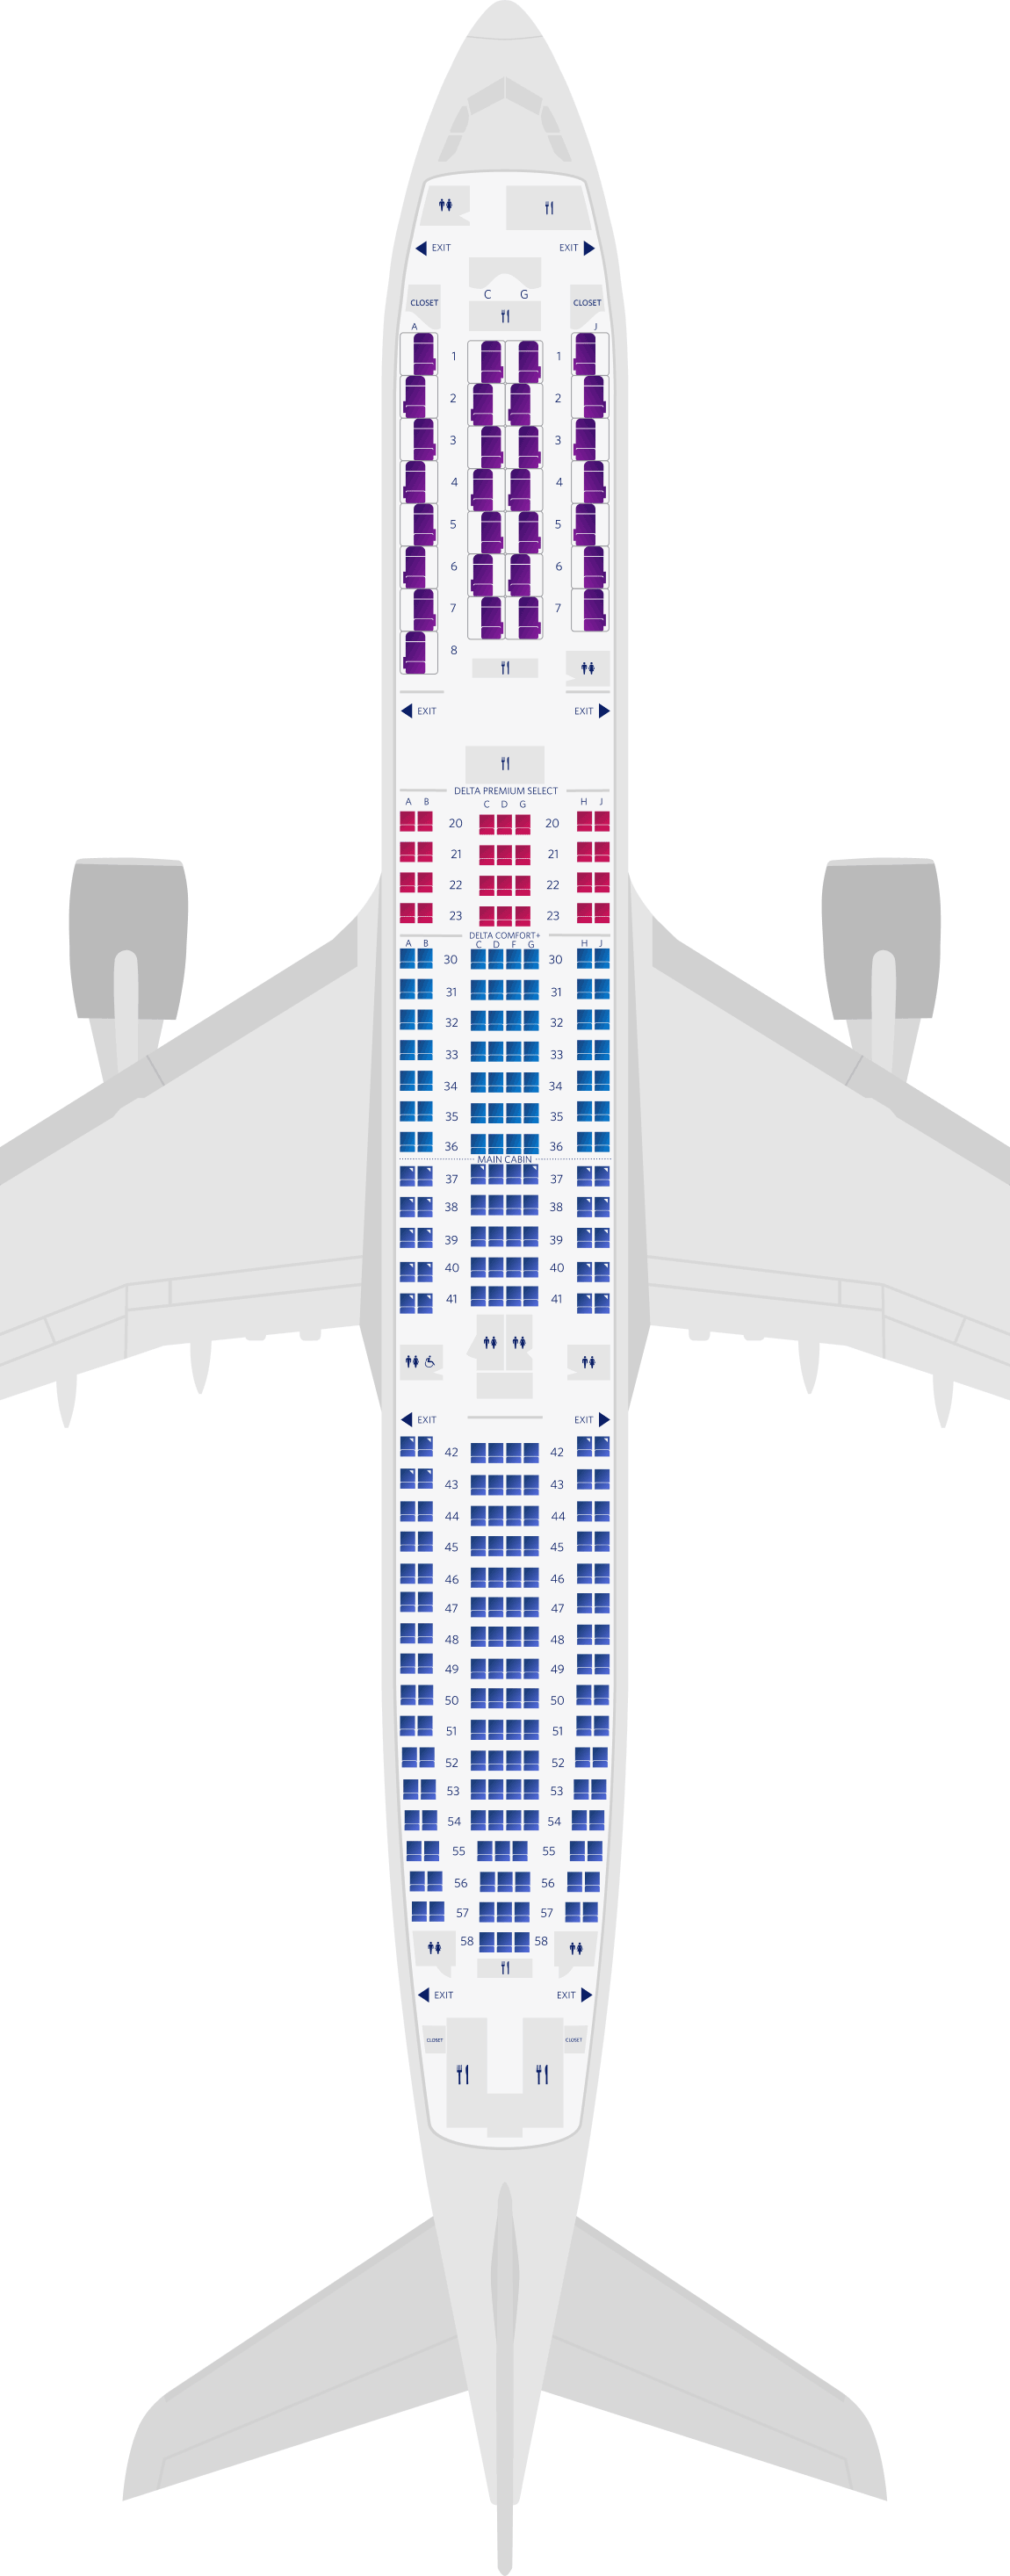 Airbus A330-900neo Sitzplatzübersicht